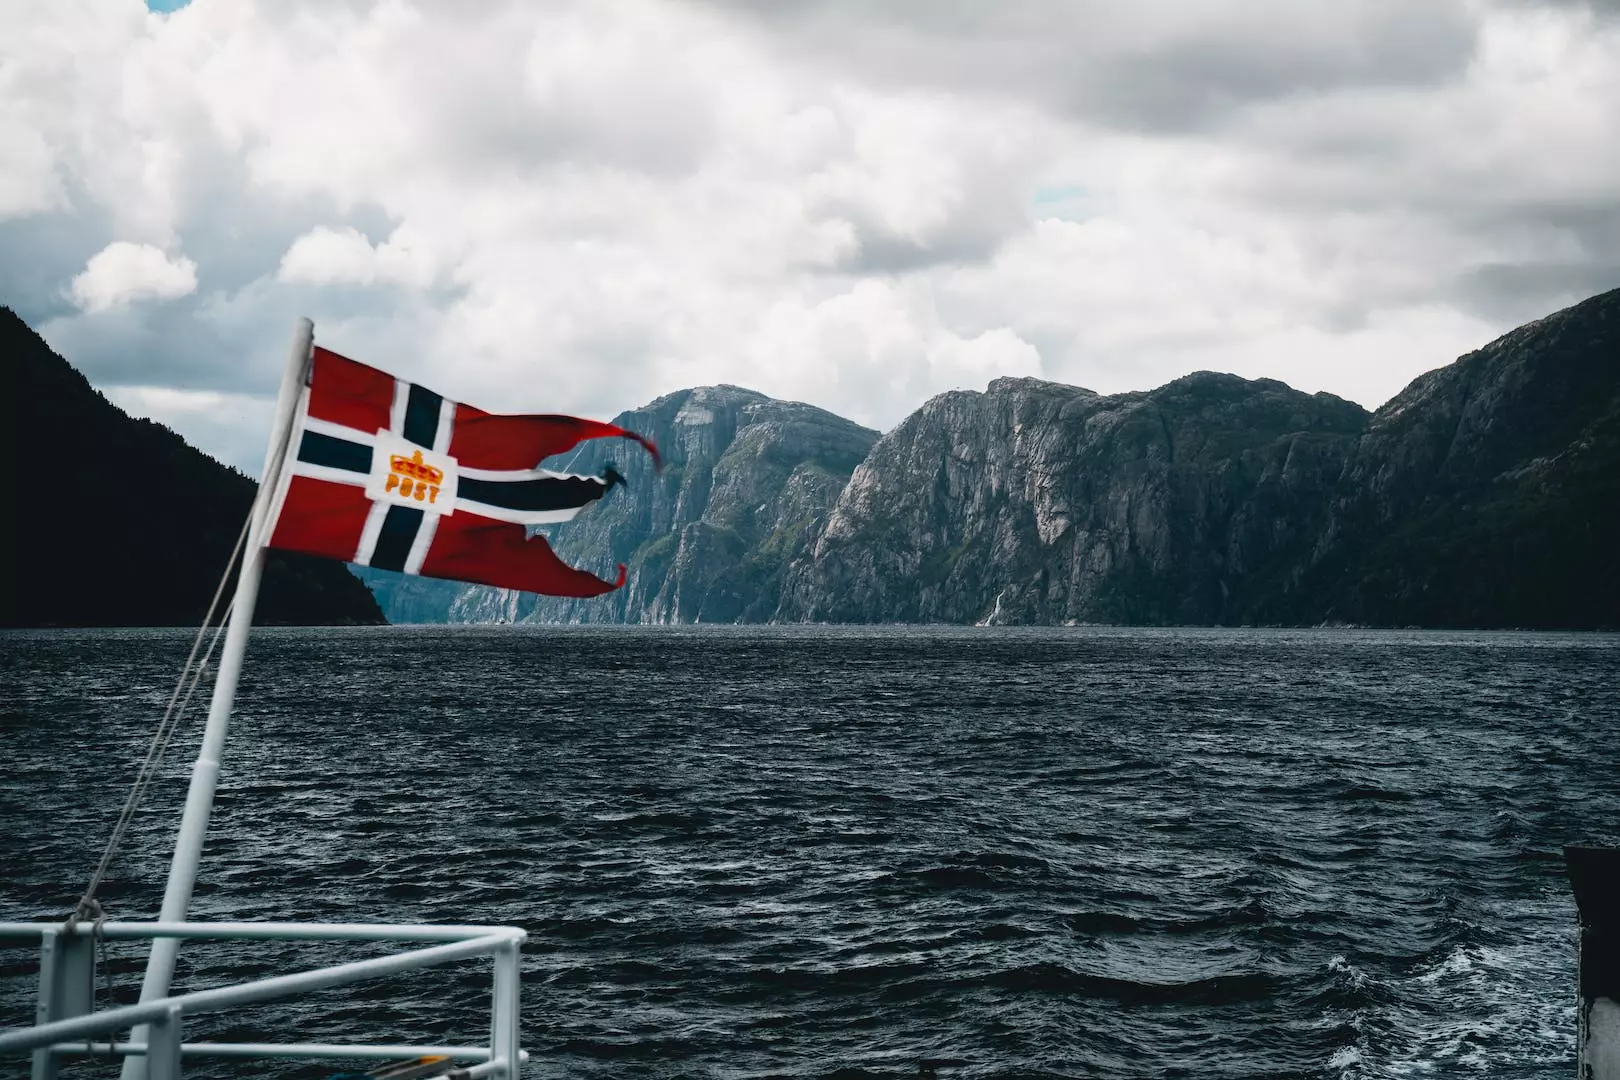 Norge fotball: Fra starten til nåtidens suksess